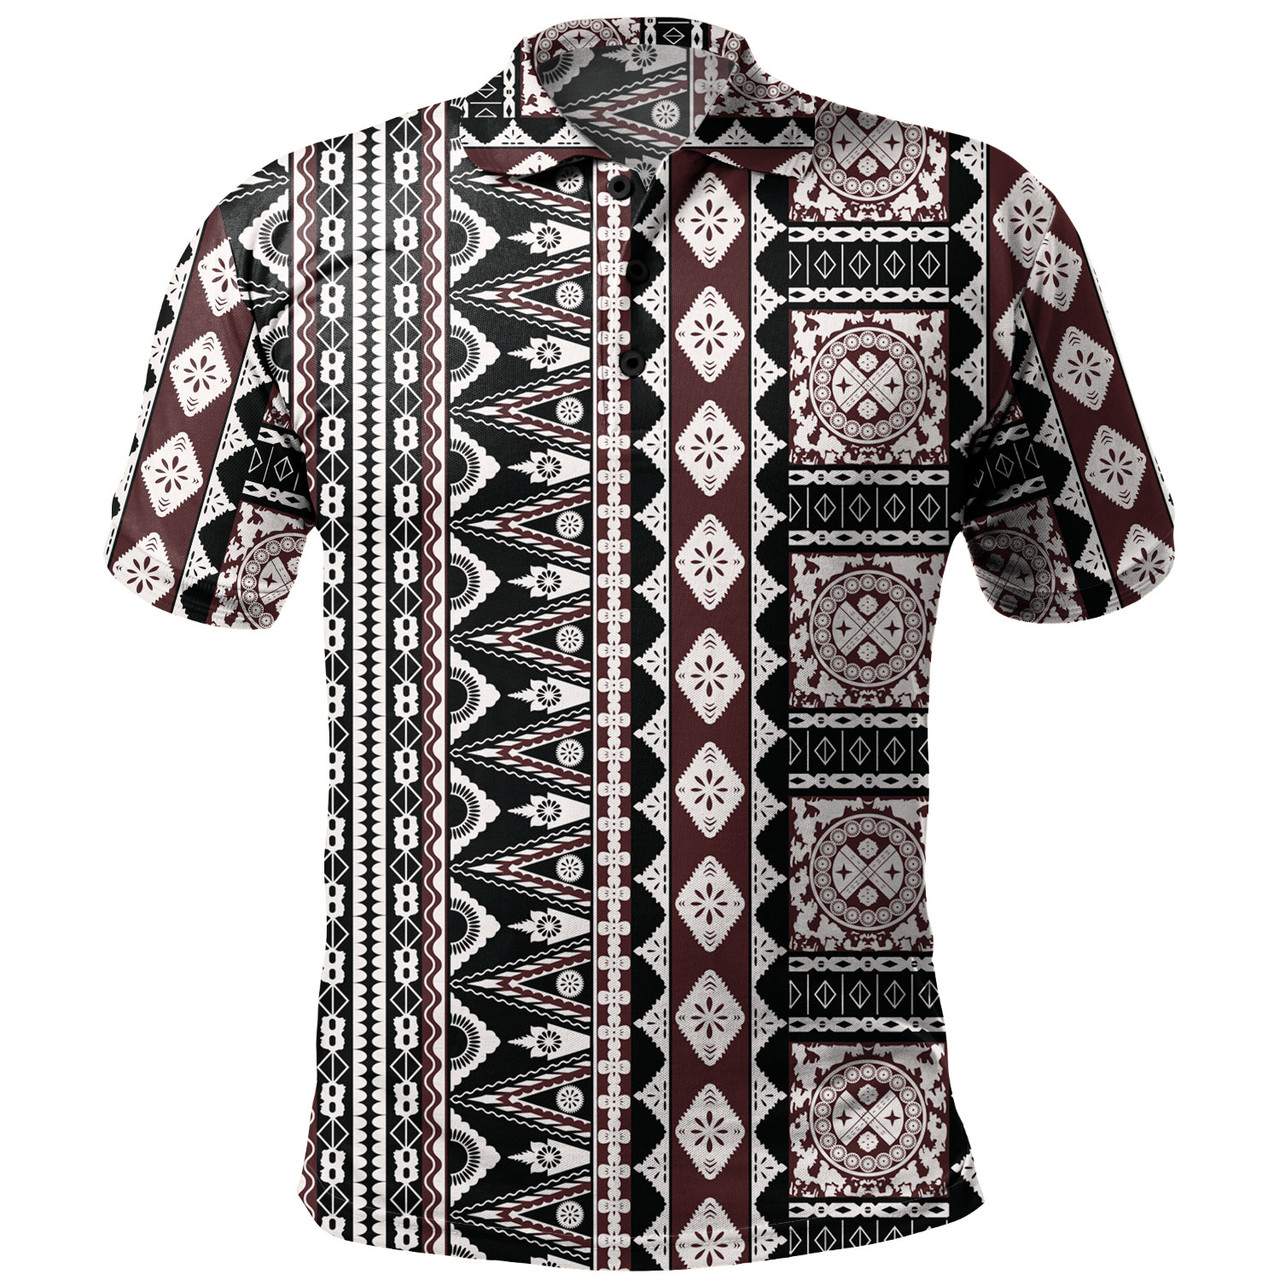 Fiji Polo Shirt Bula Fiji Masi Motif Brown Color Design